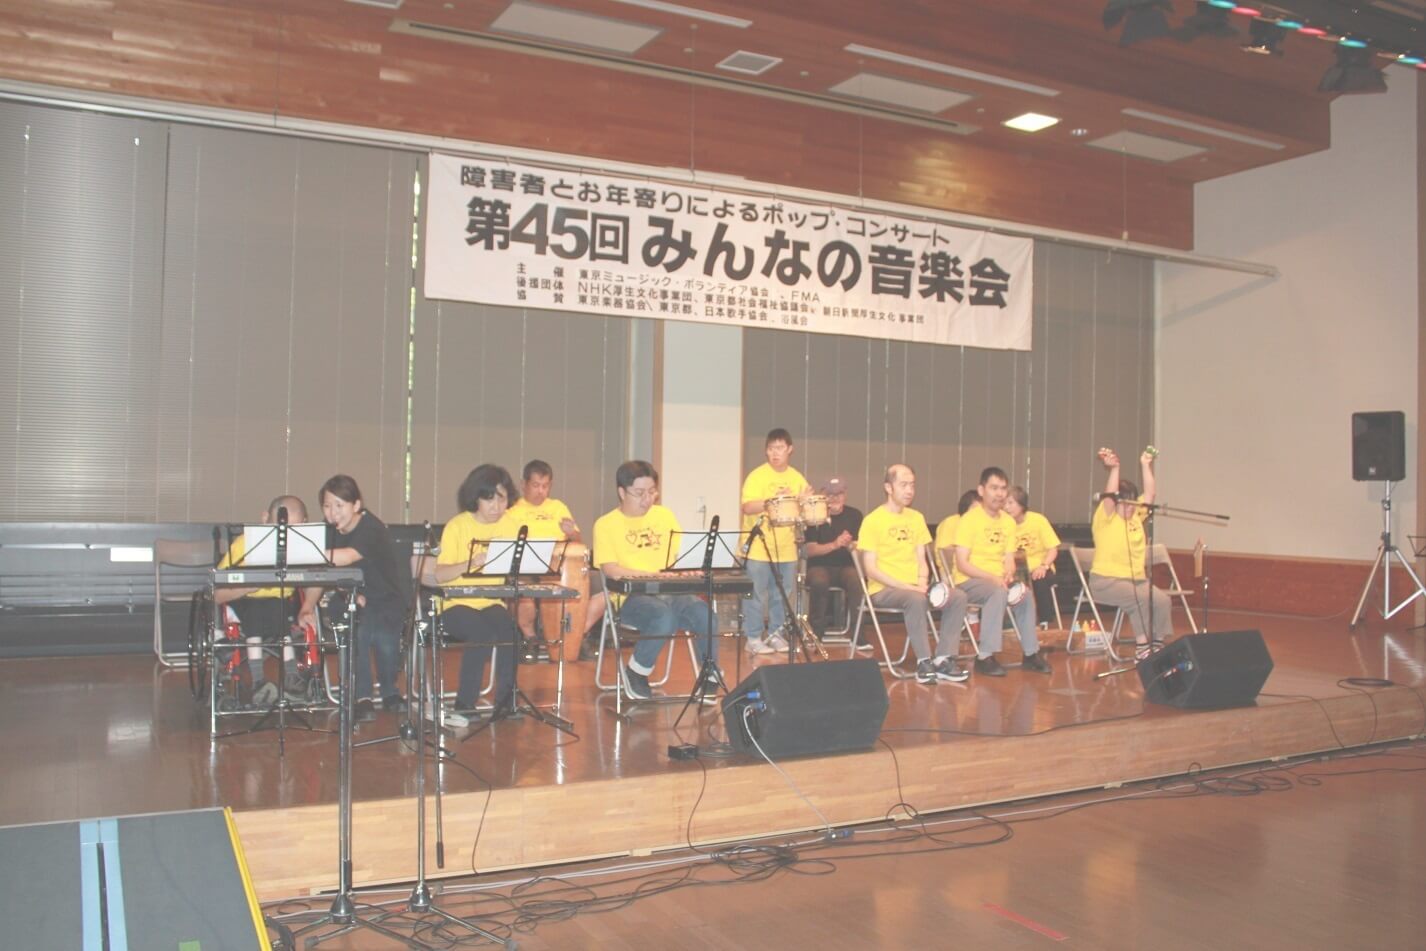 東京ミュージック・ボランティア協会の音楽会